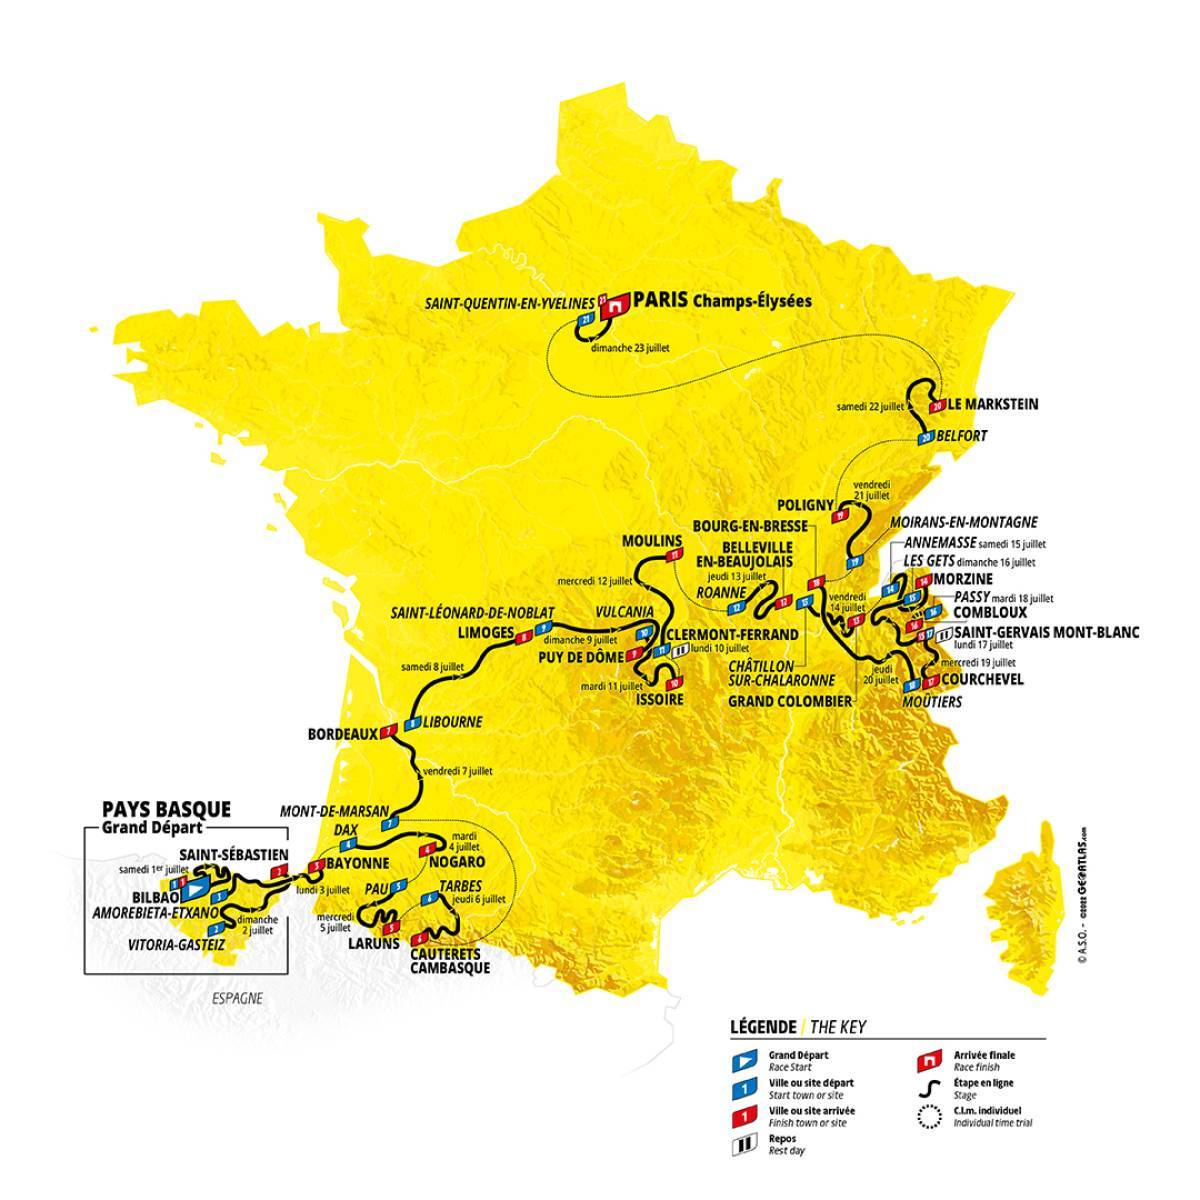 La carte du Tour de France hommes met en évidence le passage de l'épreuve dans trois grands secteurs : le sud-ouest de la France, avec le grand départ depuis le Pays-Basque, puis la transition vers le Massif Central, et enfin de nombreuses étapes autour des Alpes.